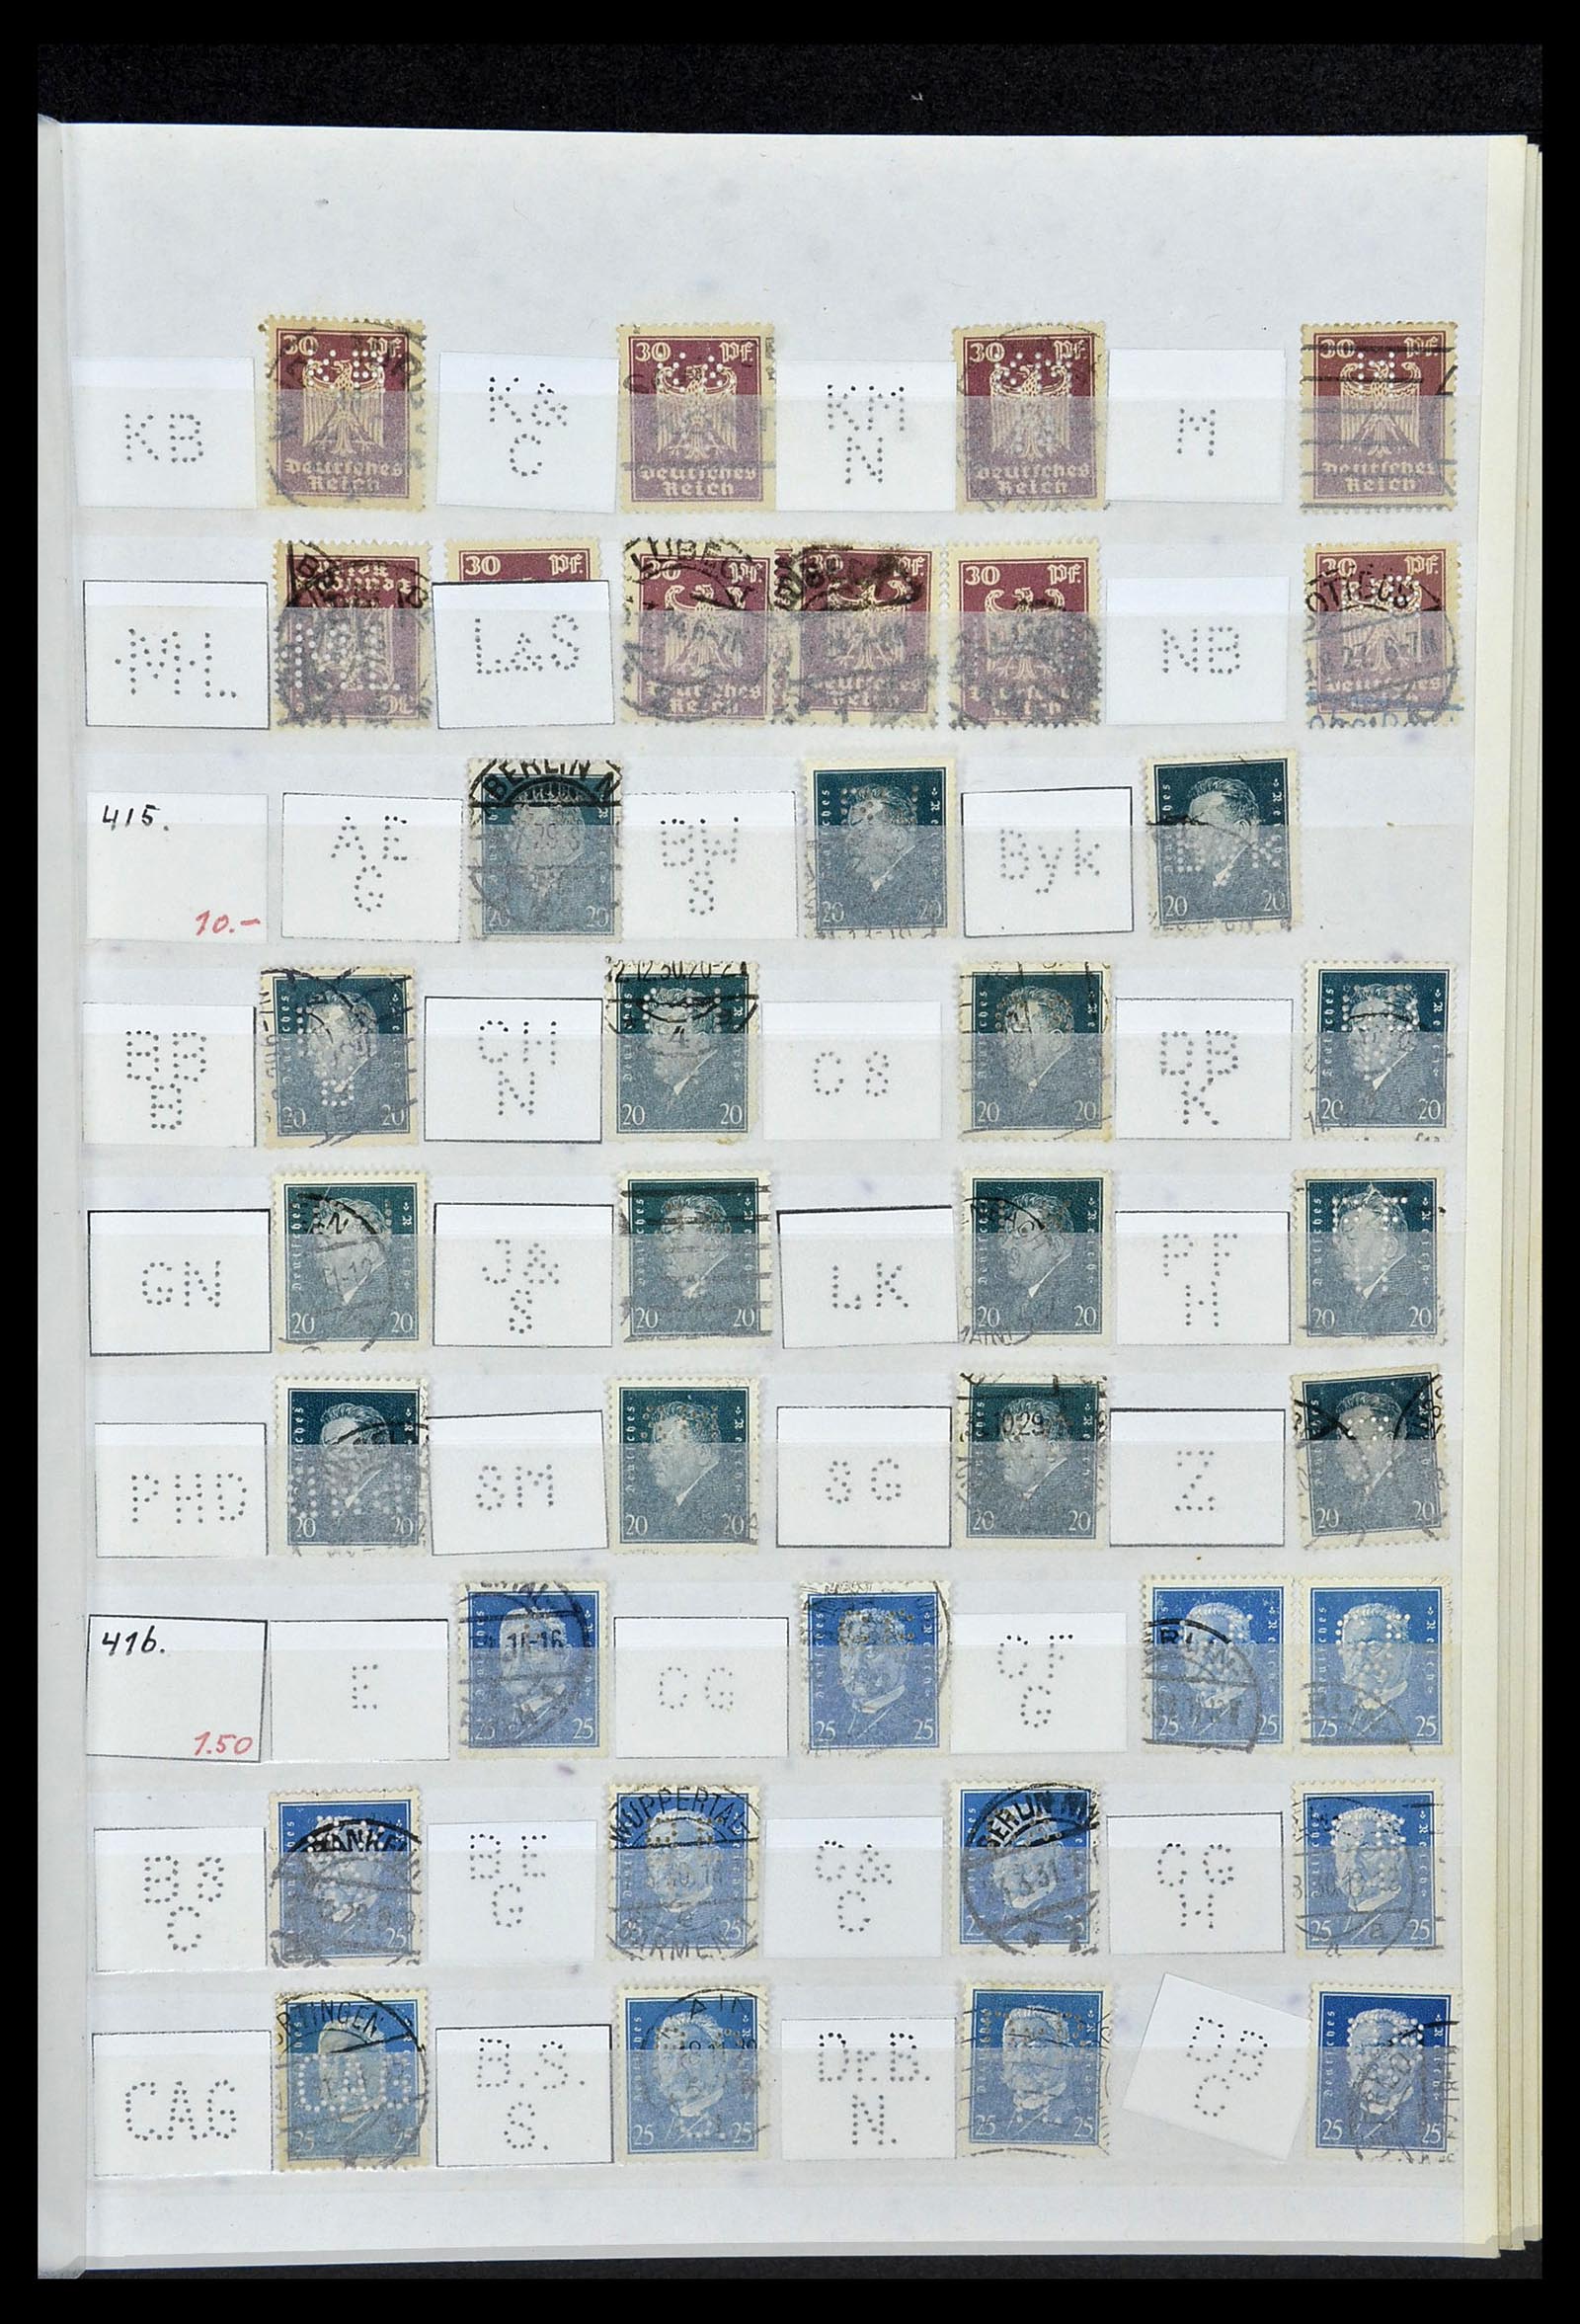 34071 037 - Stamp collection 34071 German Reich perfins 1923-1930.